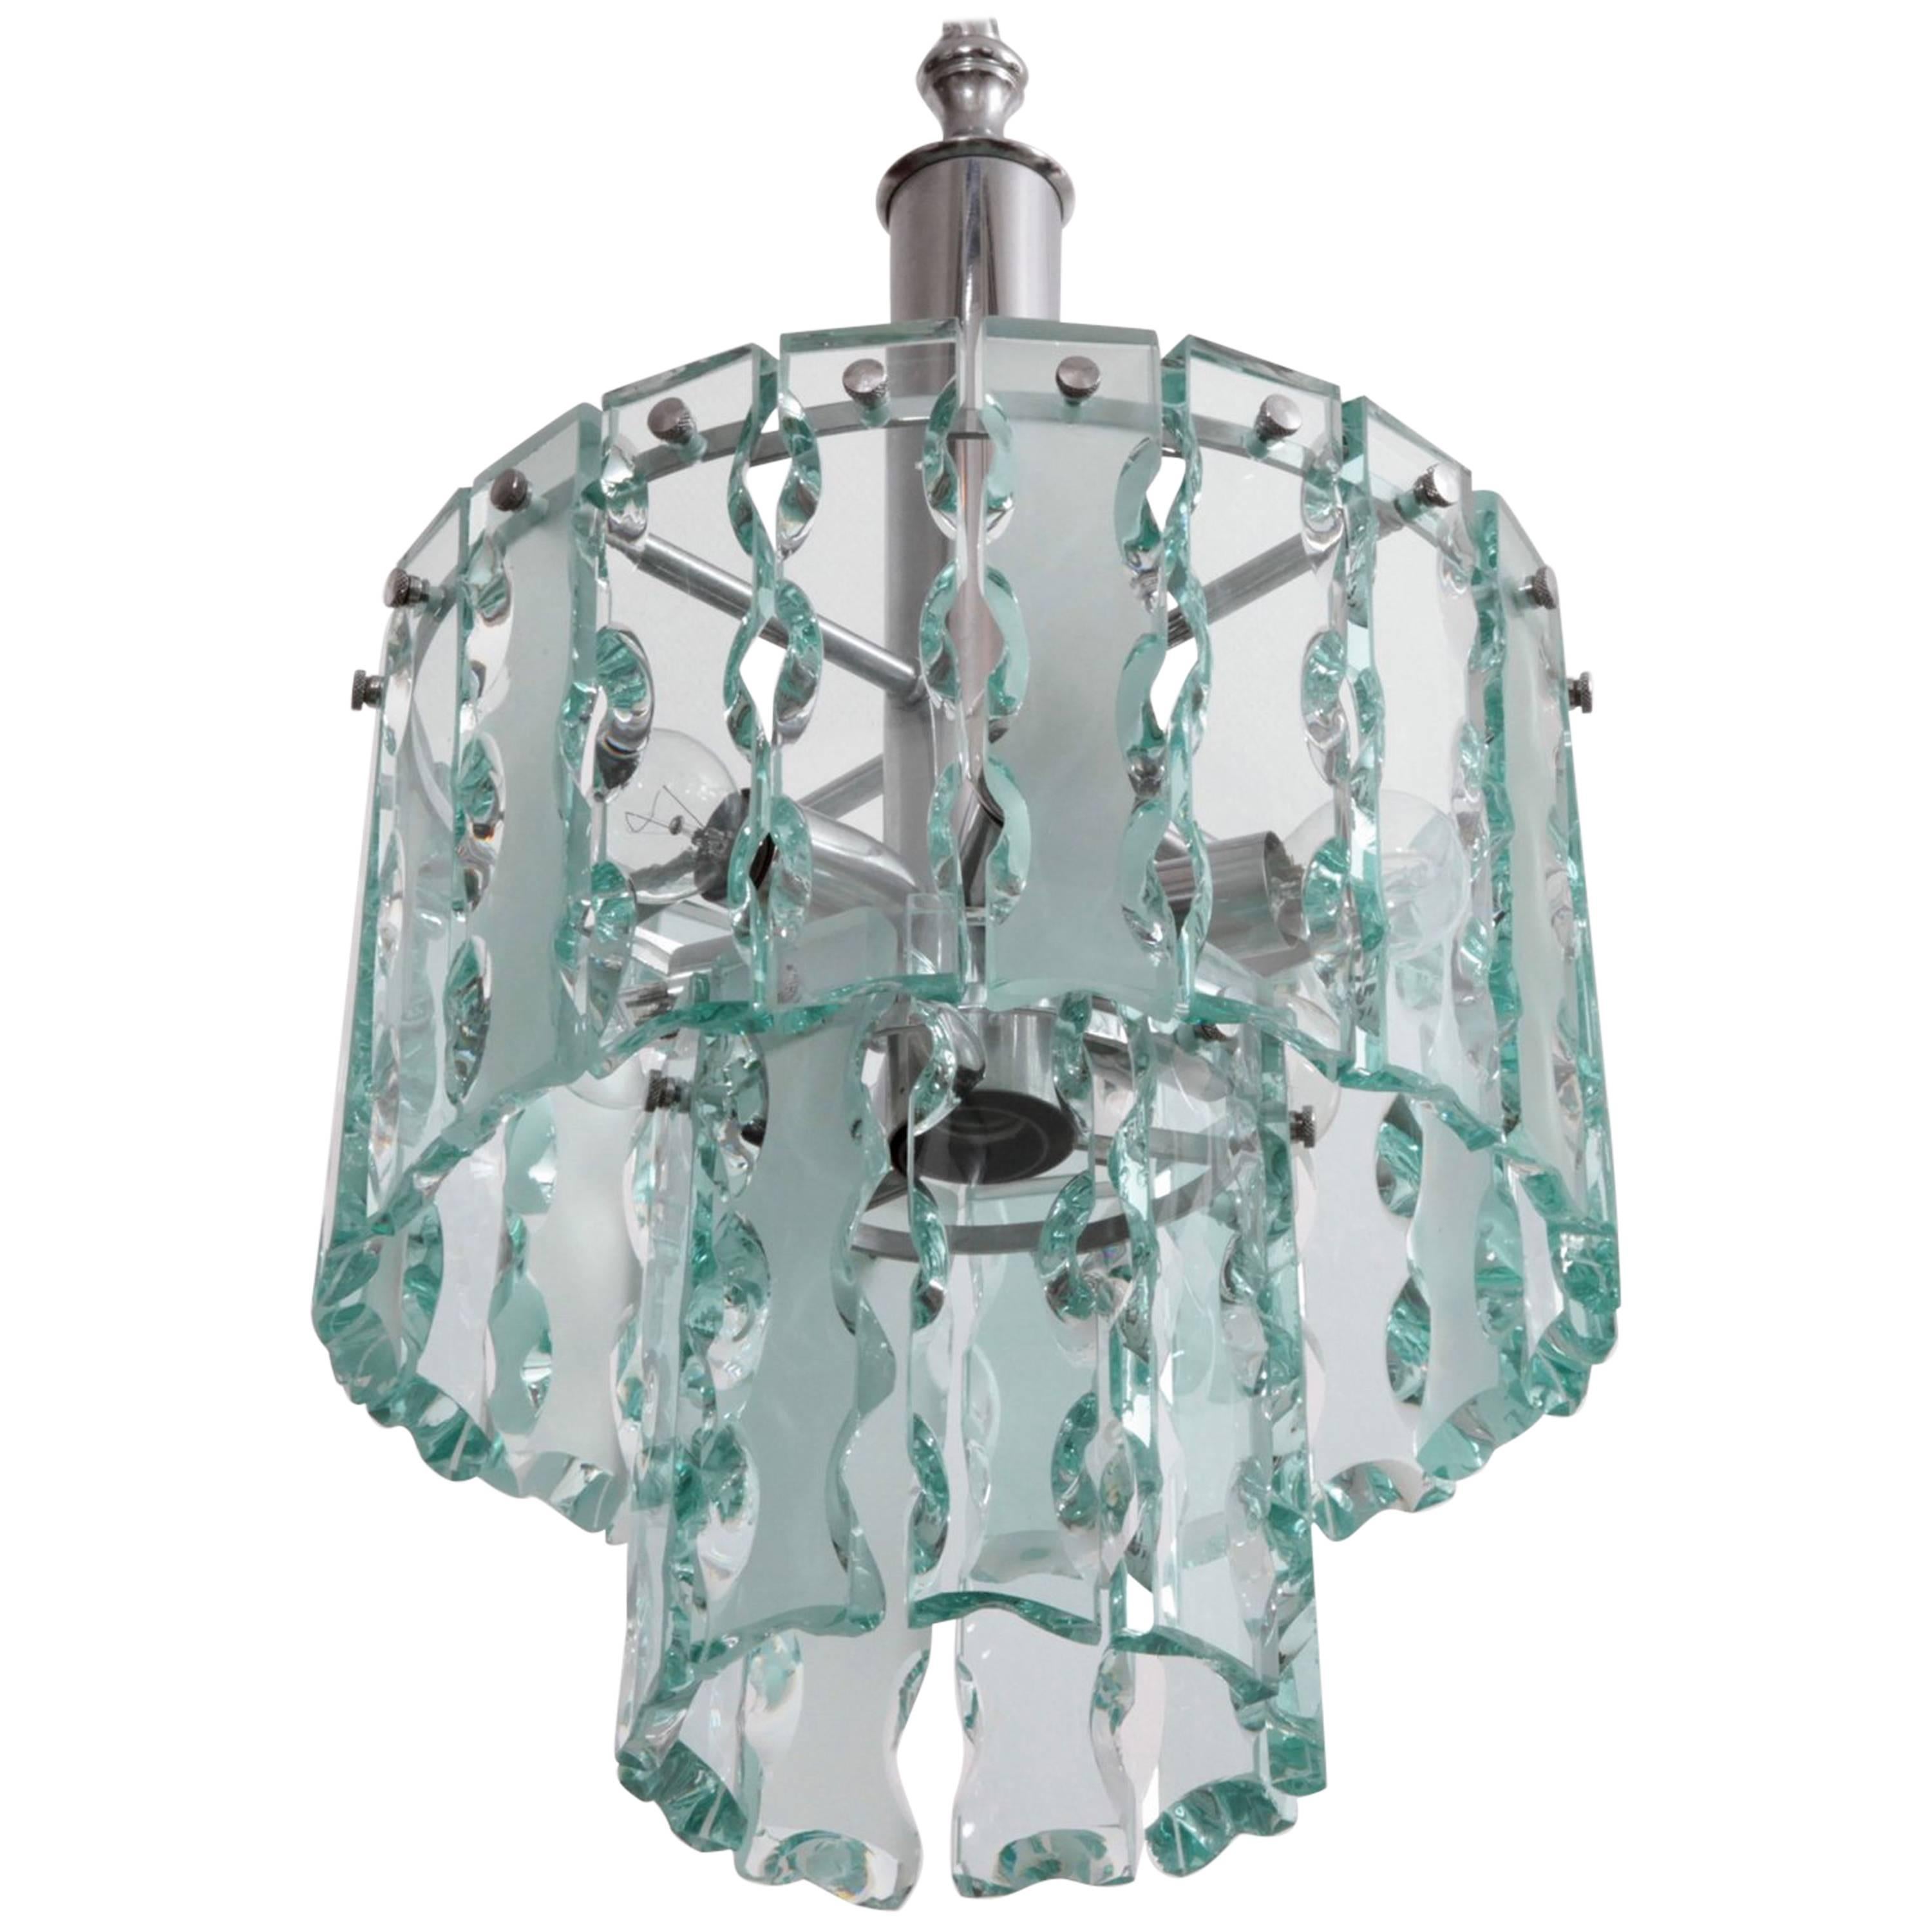 Fontana Arte Style Two-Tier Glass Chandelier